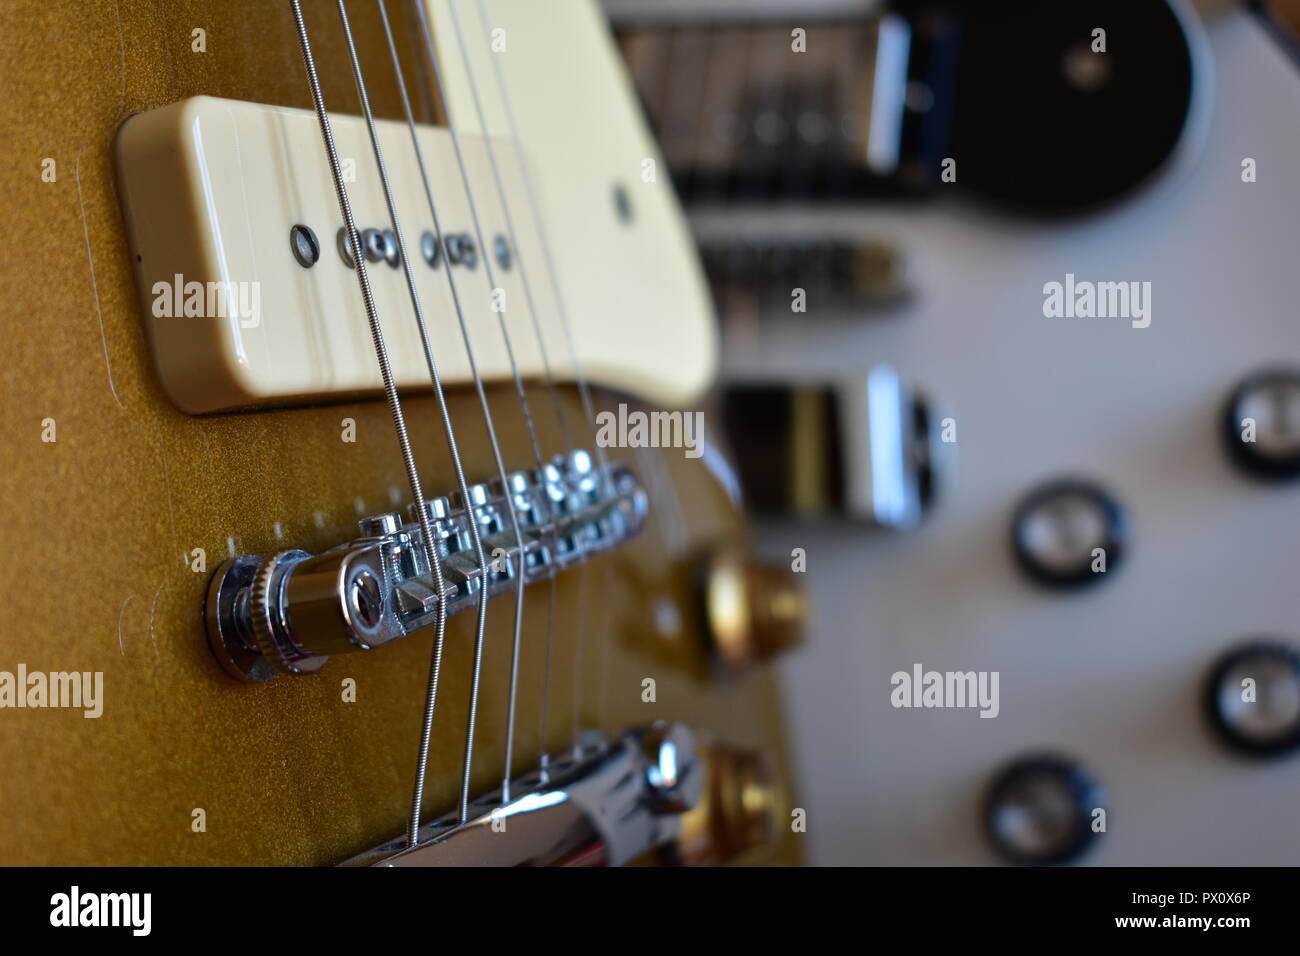 Gibson Les Paul Immagini e Fotos Stock - Alamy